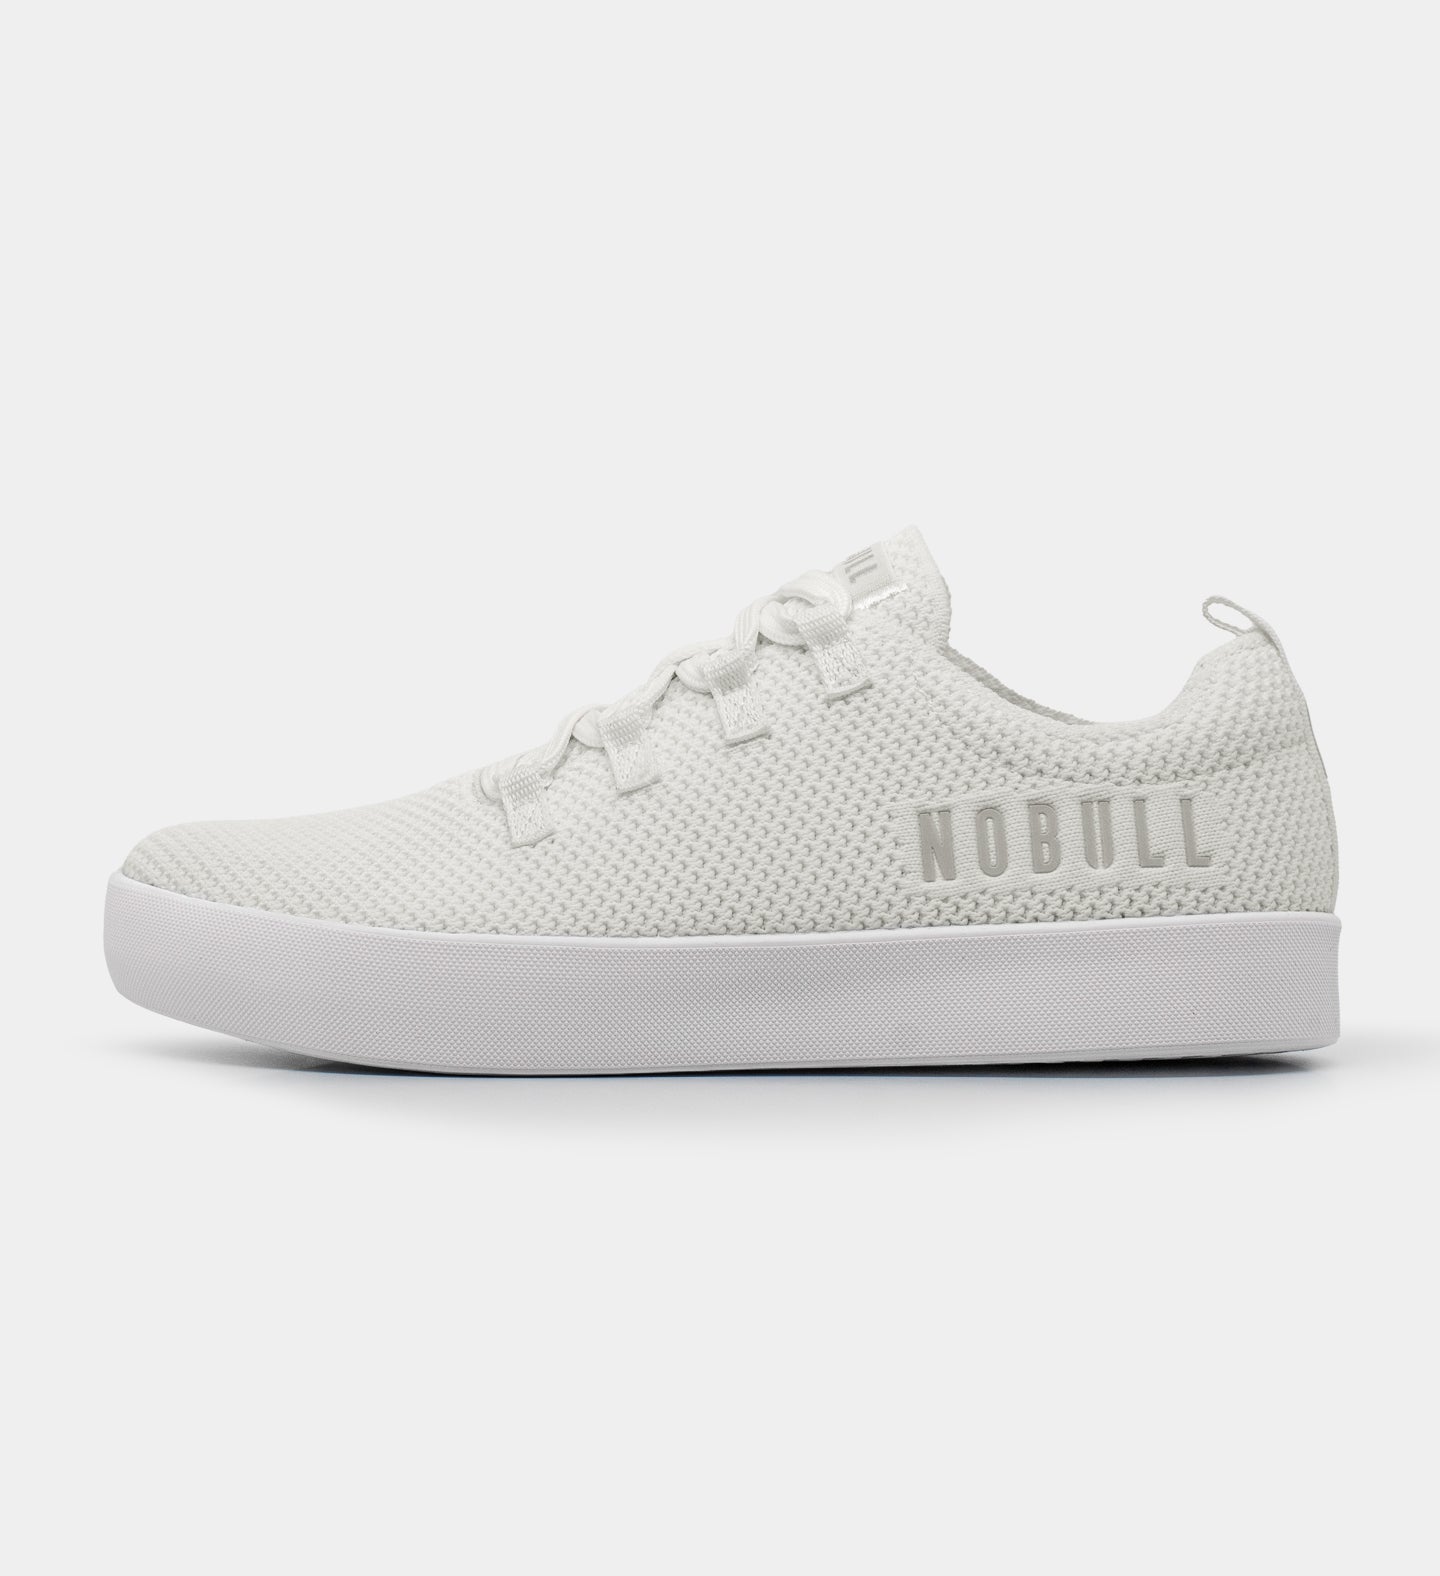 NOBULL - Men's Court Trainer - White - Size 13